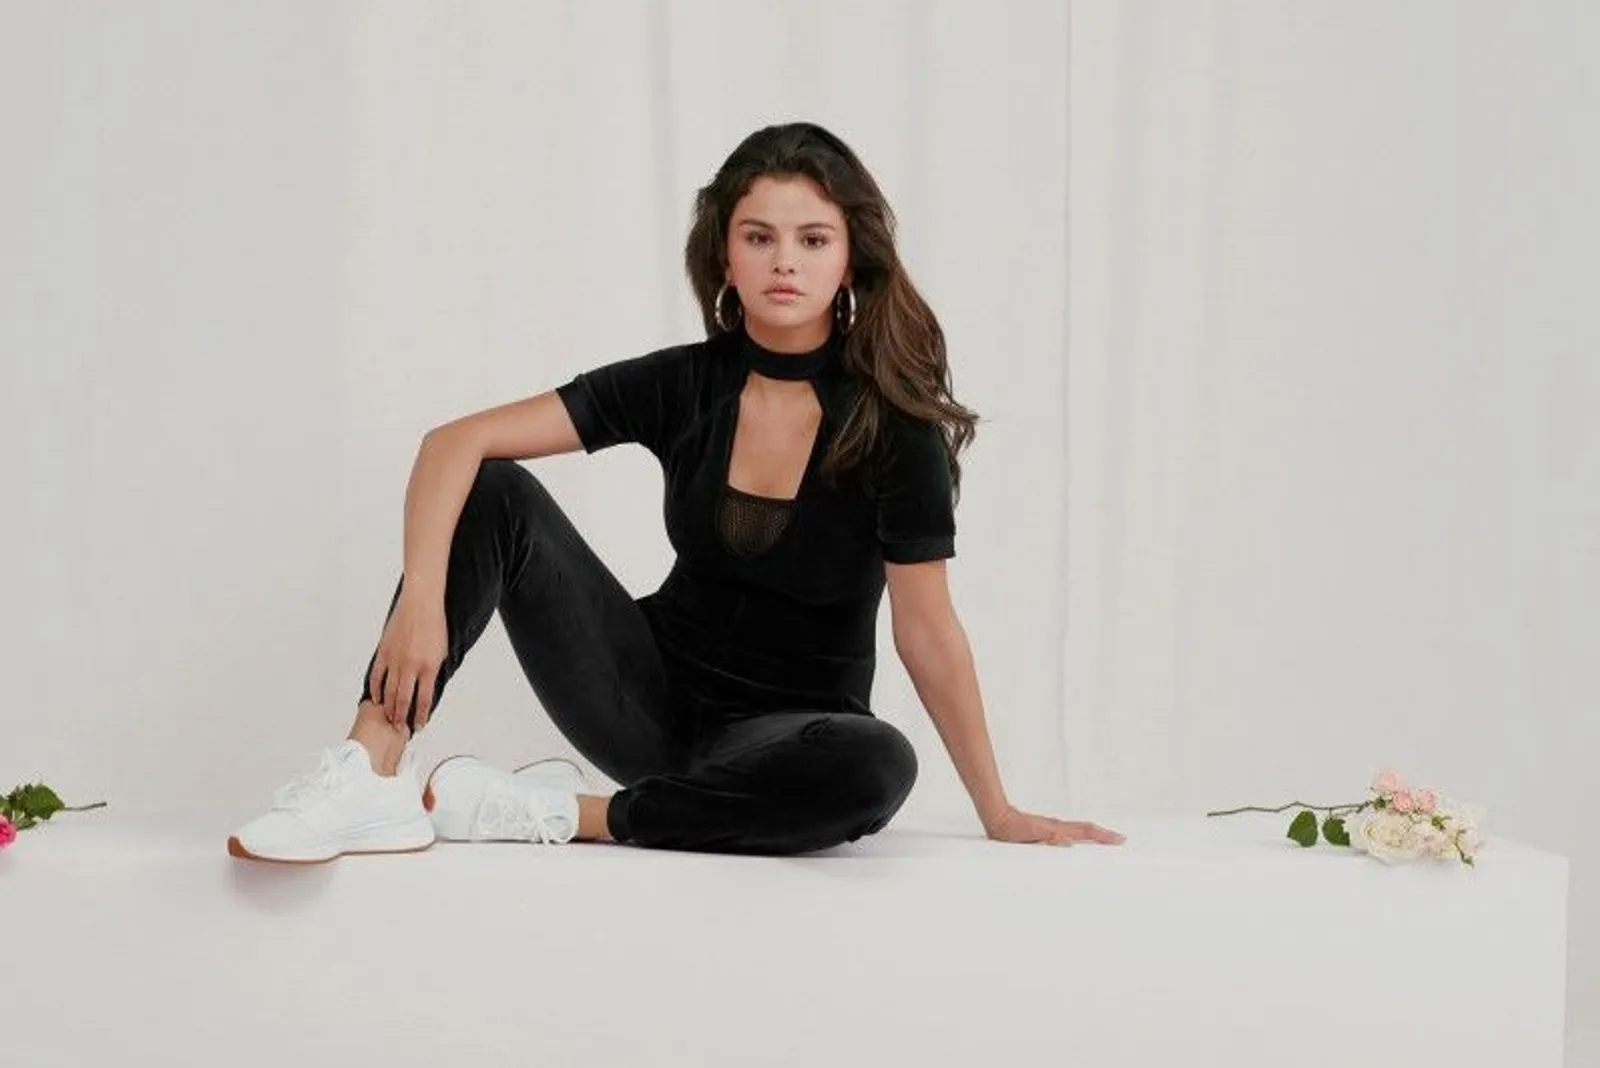 Bertemakan "Strong Girl", Ini Desain Perdana Selena Gomez untuk PUMA